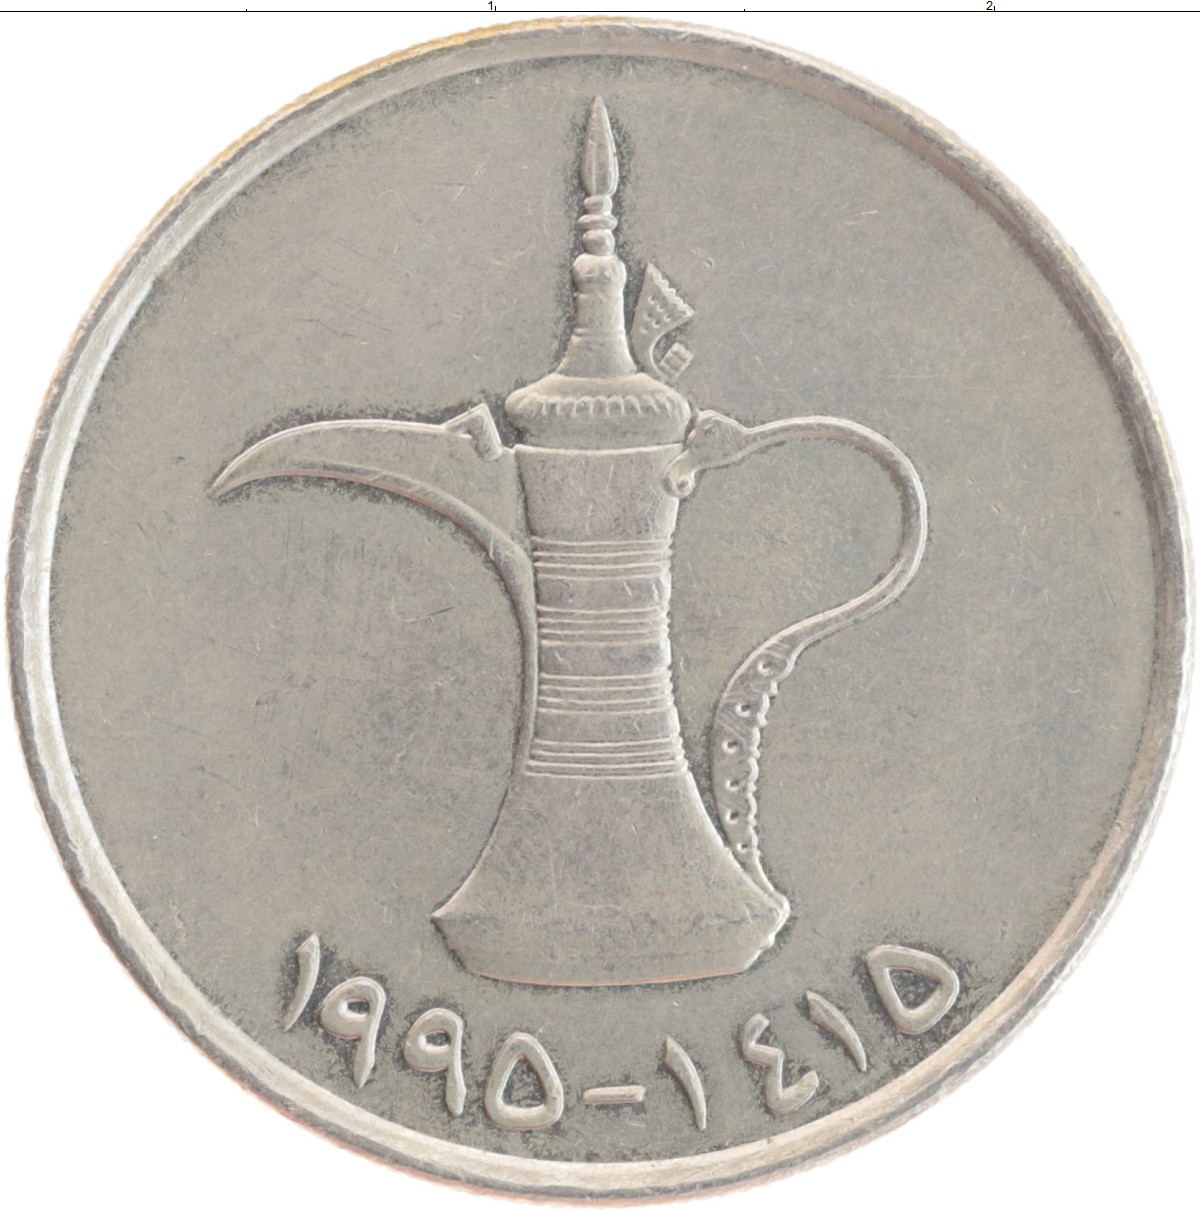 30000 дирхам. United arab Emirates монета. 1 Дирхам арабские эмираты. United arab Emirates монета 1. Монеты эмираты 1 дирхам 1995.